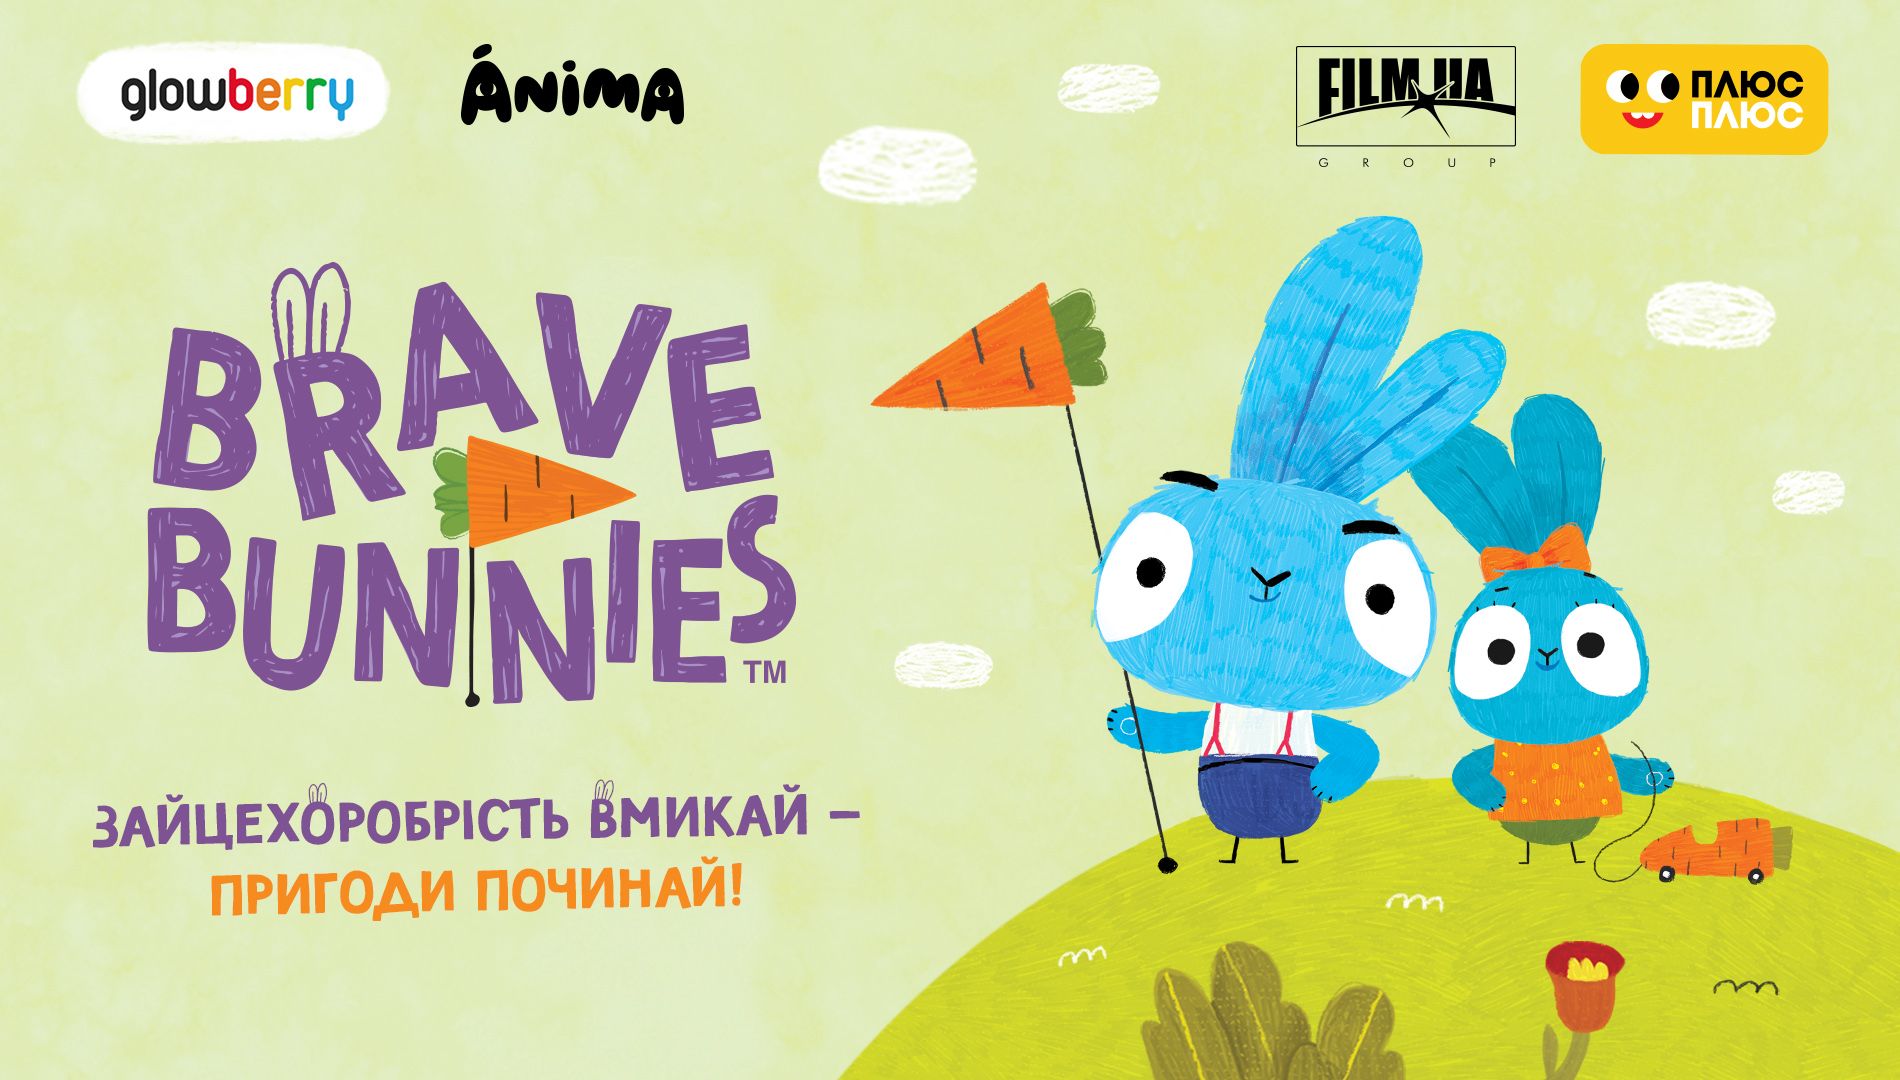 «ПлюсПлюс» покаже прем’єру мультсеріалу «Хоробрі зайці» українського продакшену Glowberry